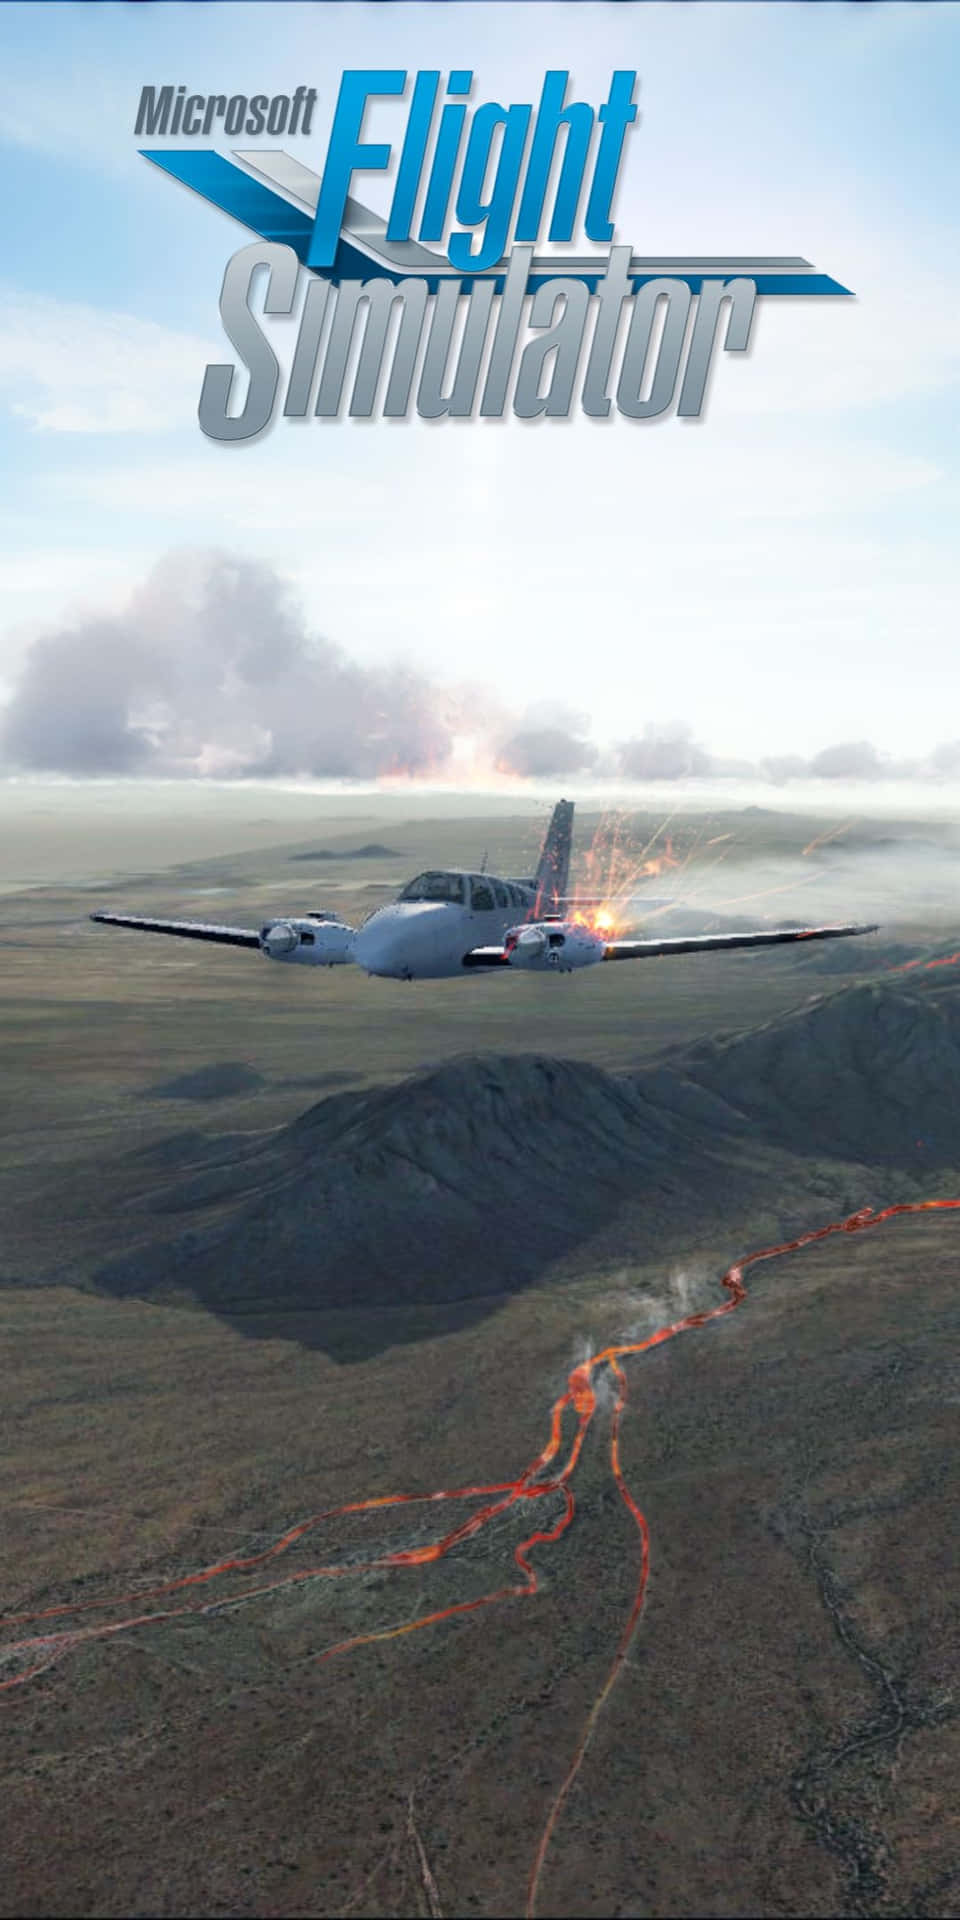 Plano De Fundo Do Microsoft Flight Simulator Do Pixel 3